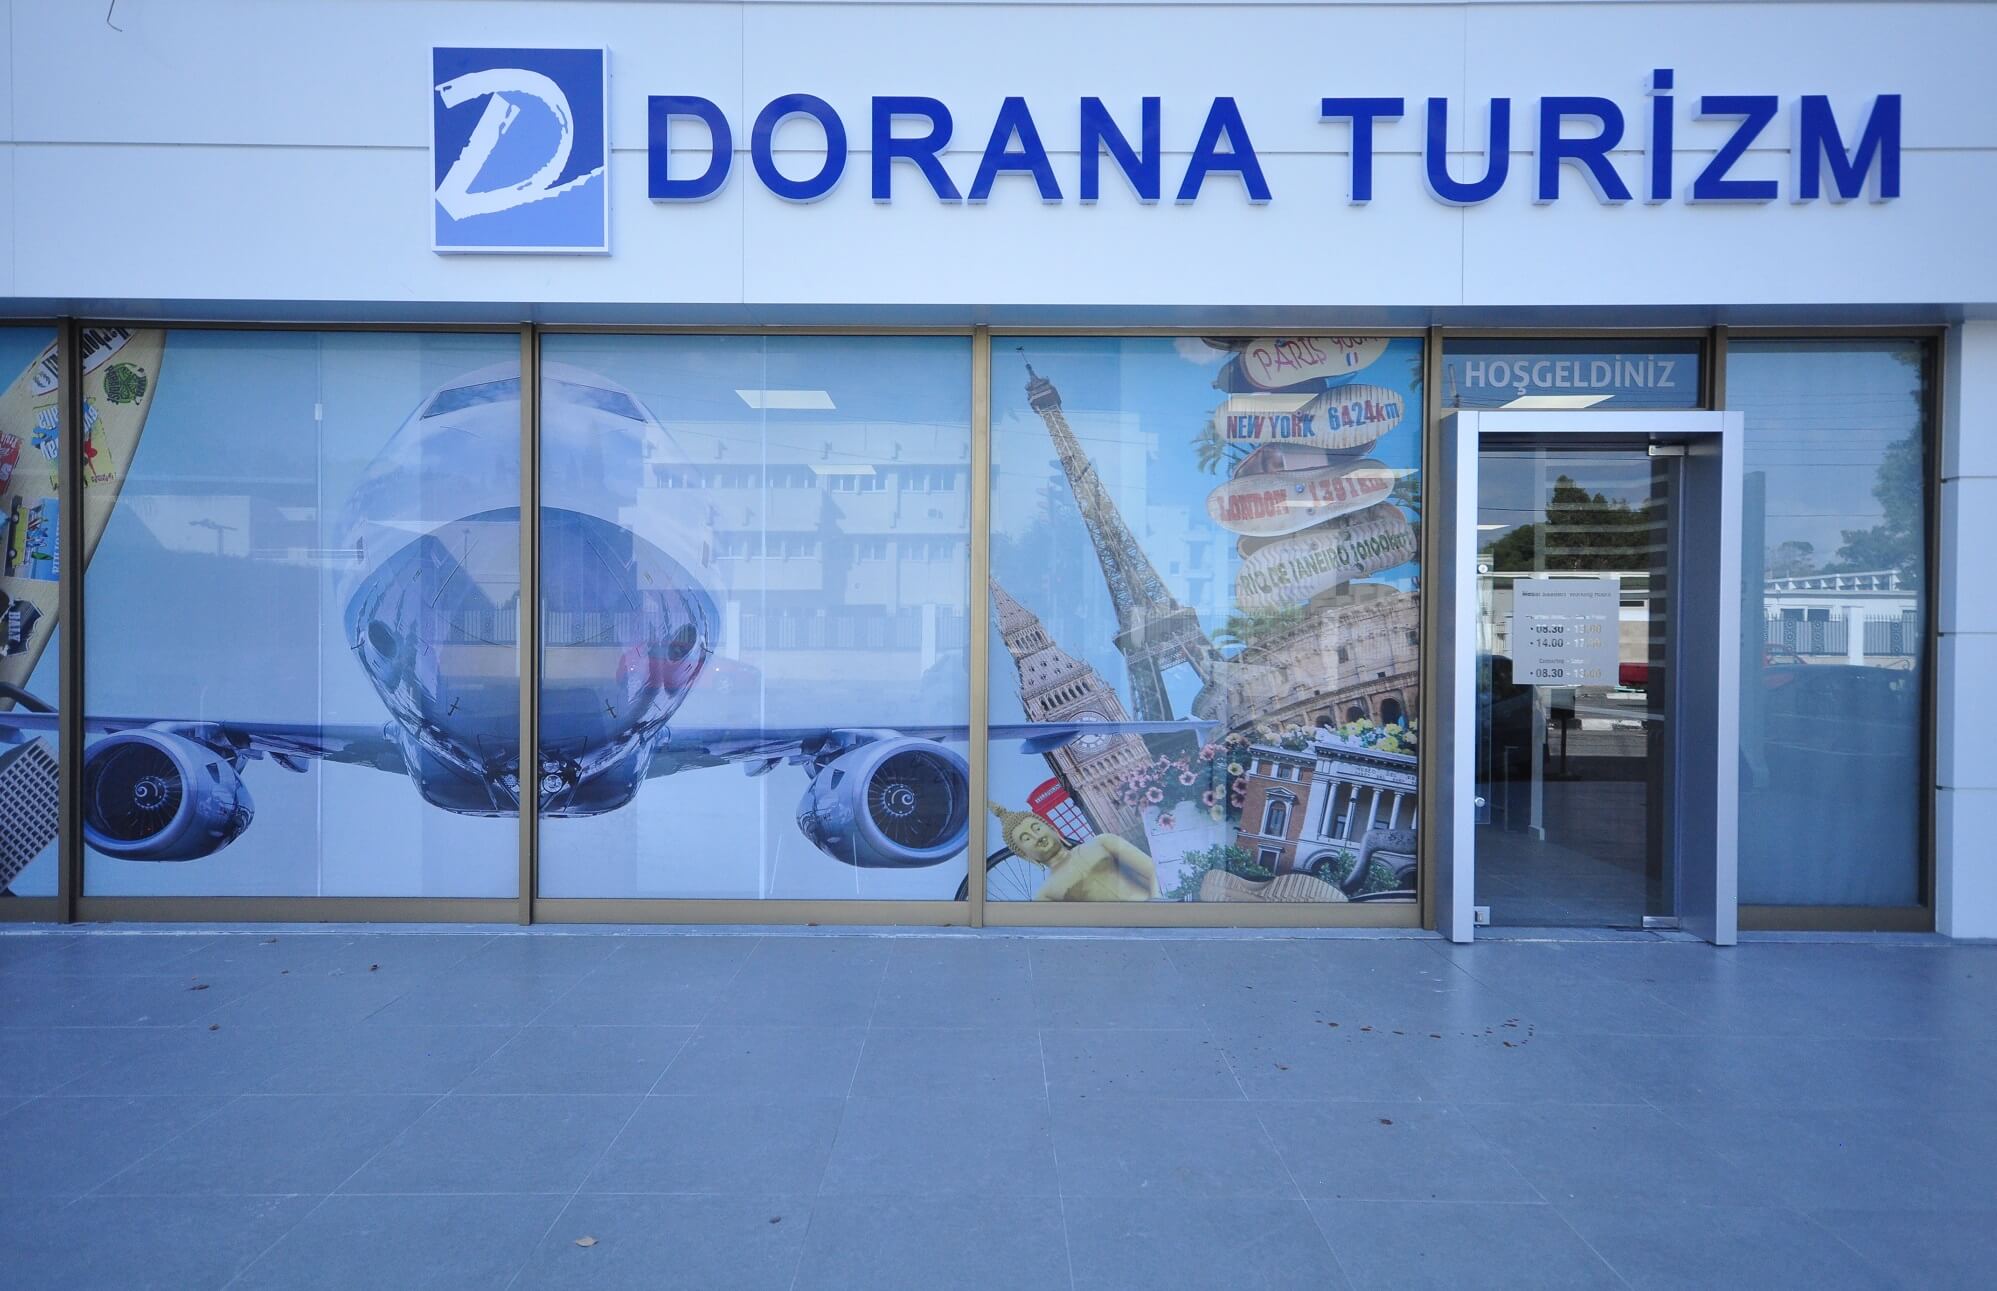 Dorana Tourism